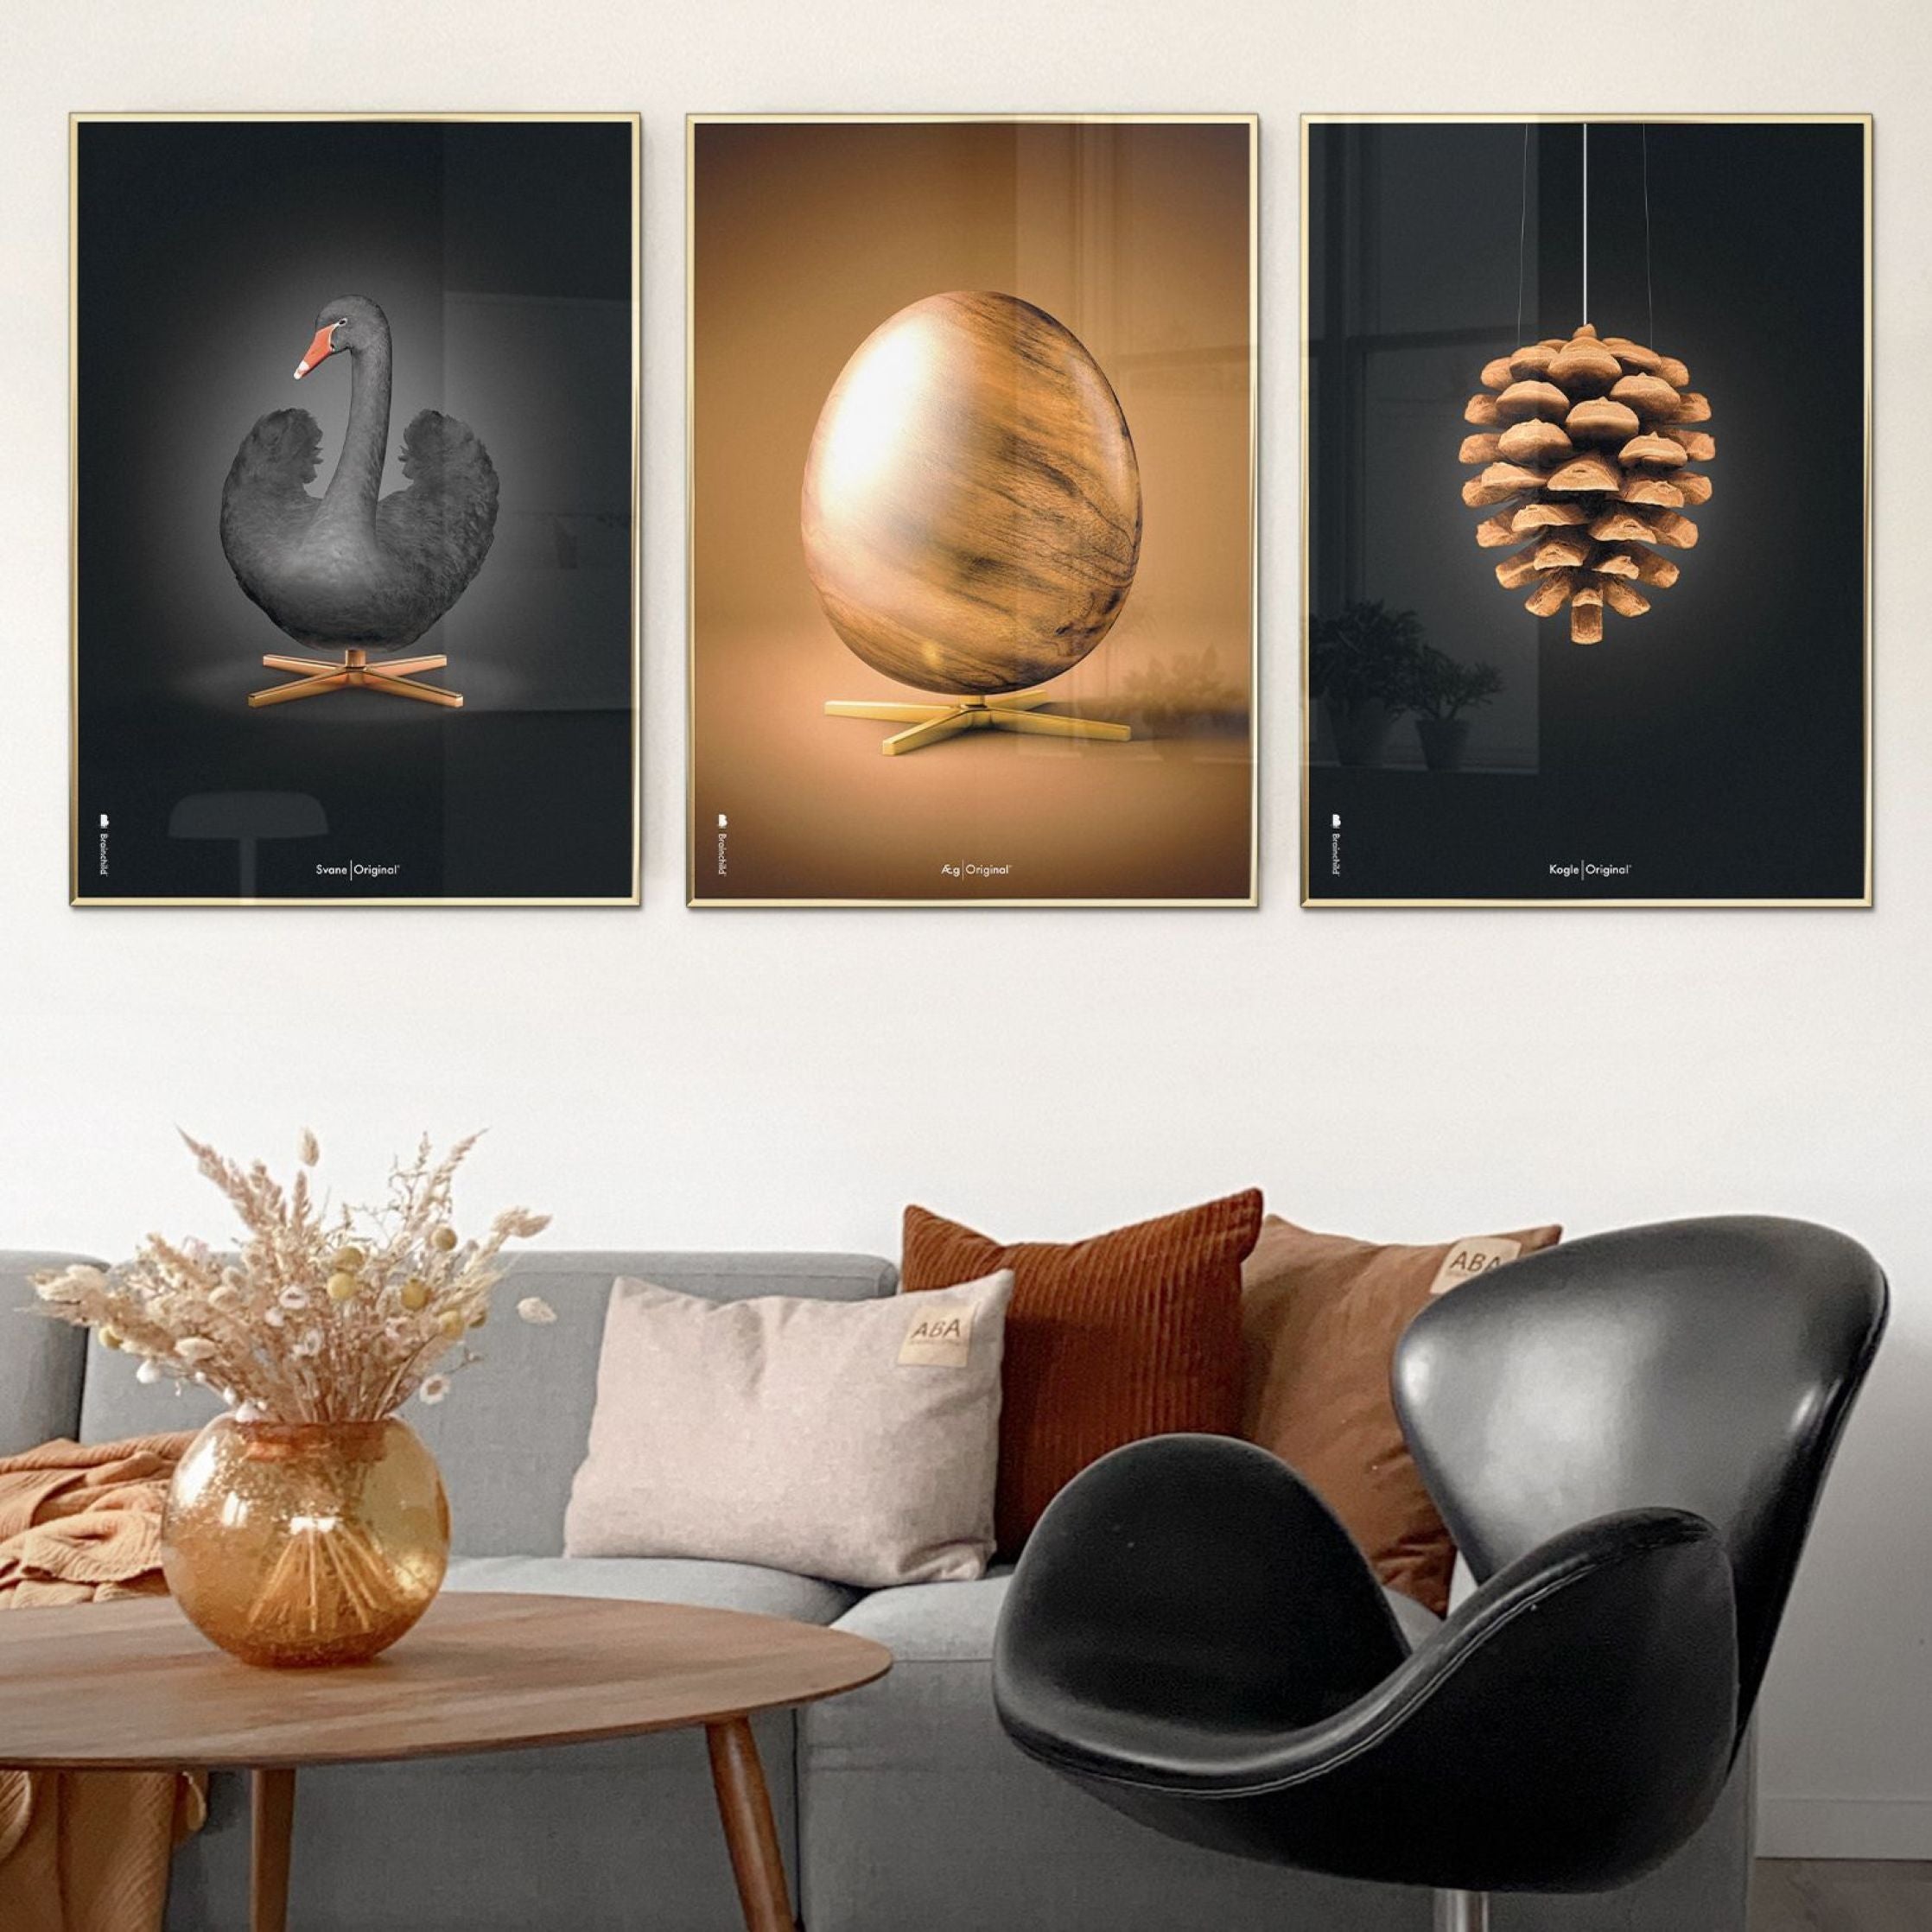 Brainchild Swan Classic Poster, Frame Made of Light Wood 50x70 cm, svart/svart bakgrunn